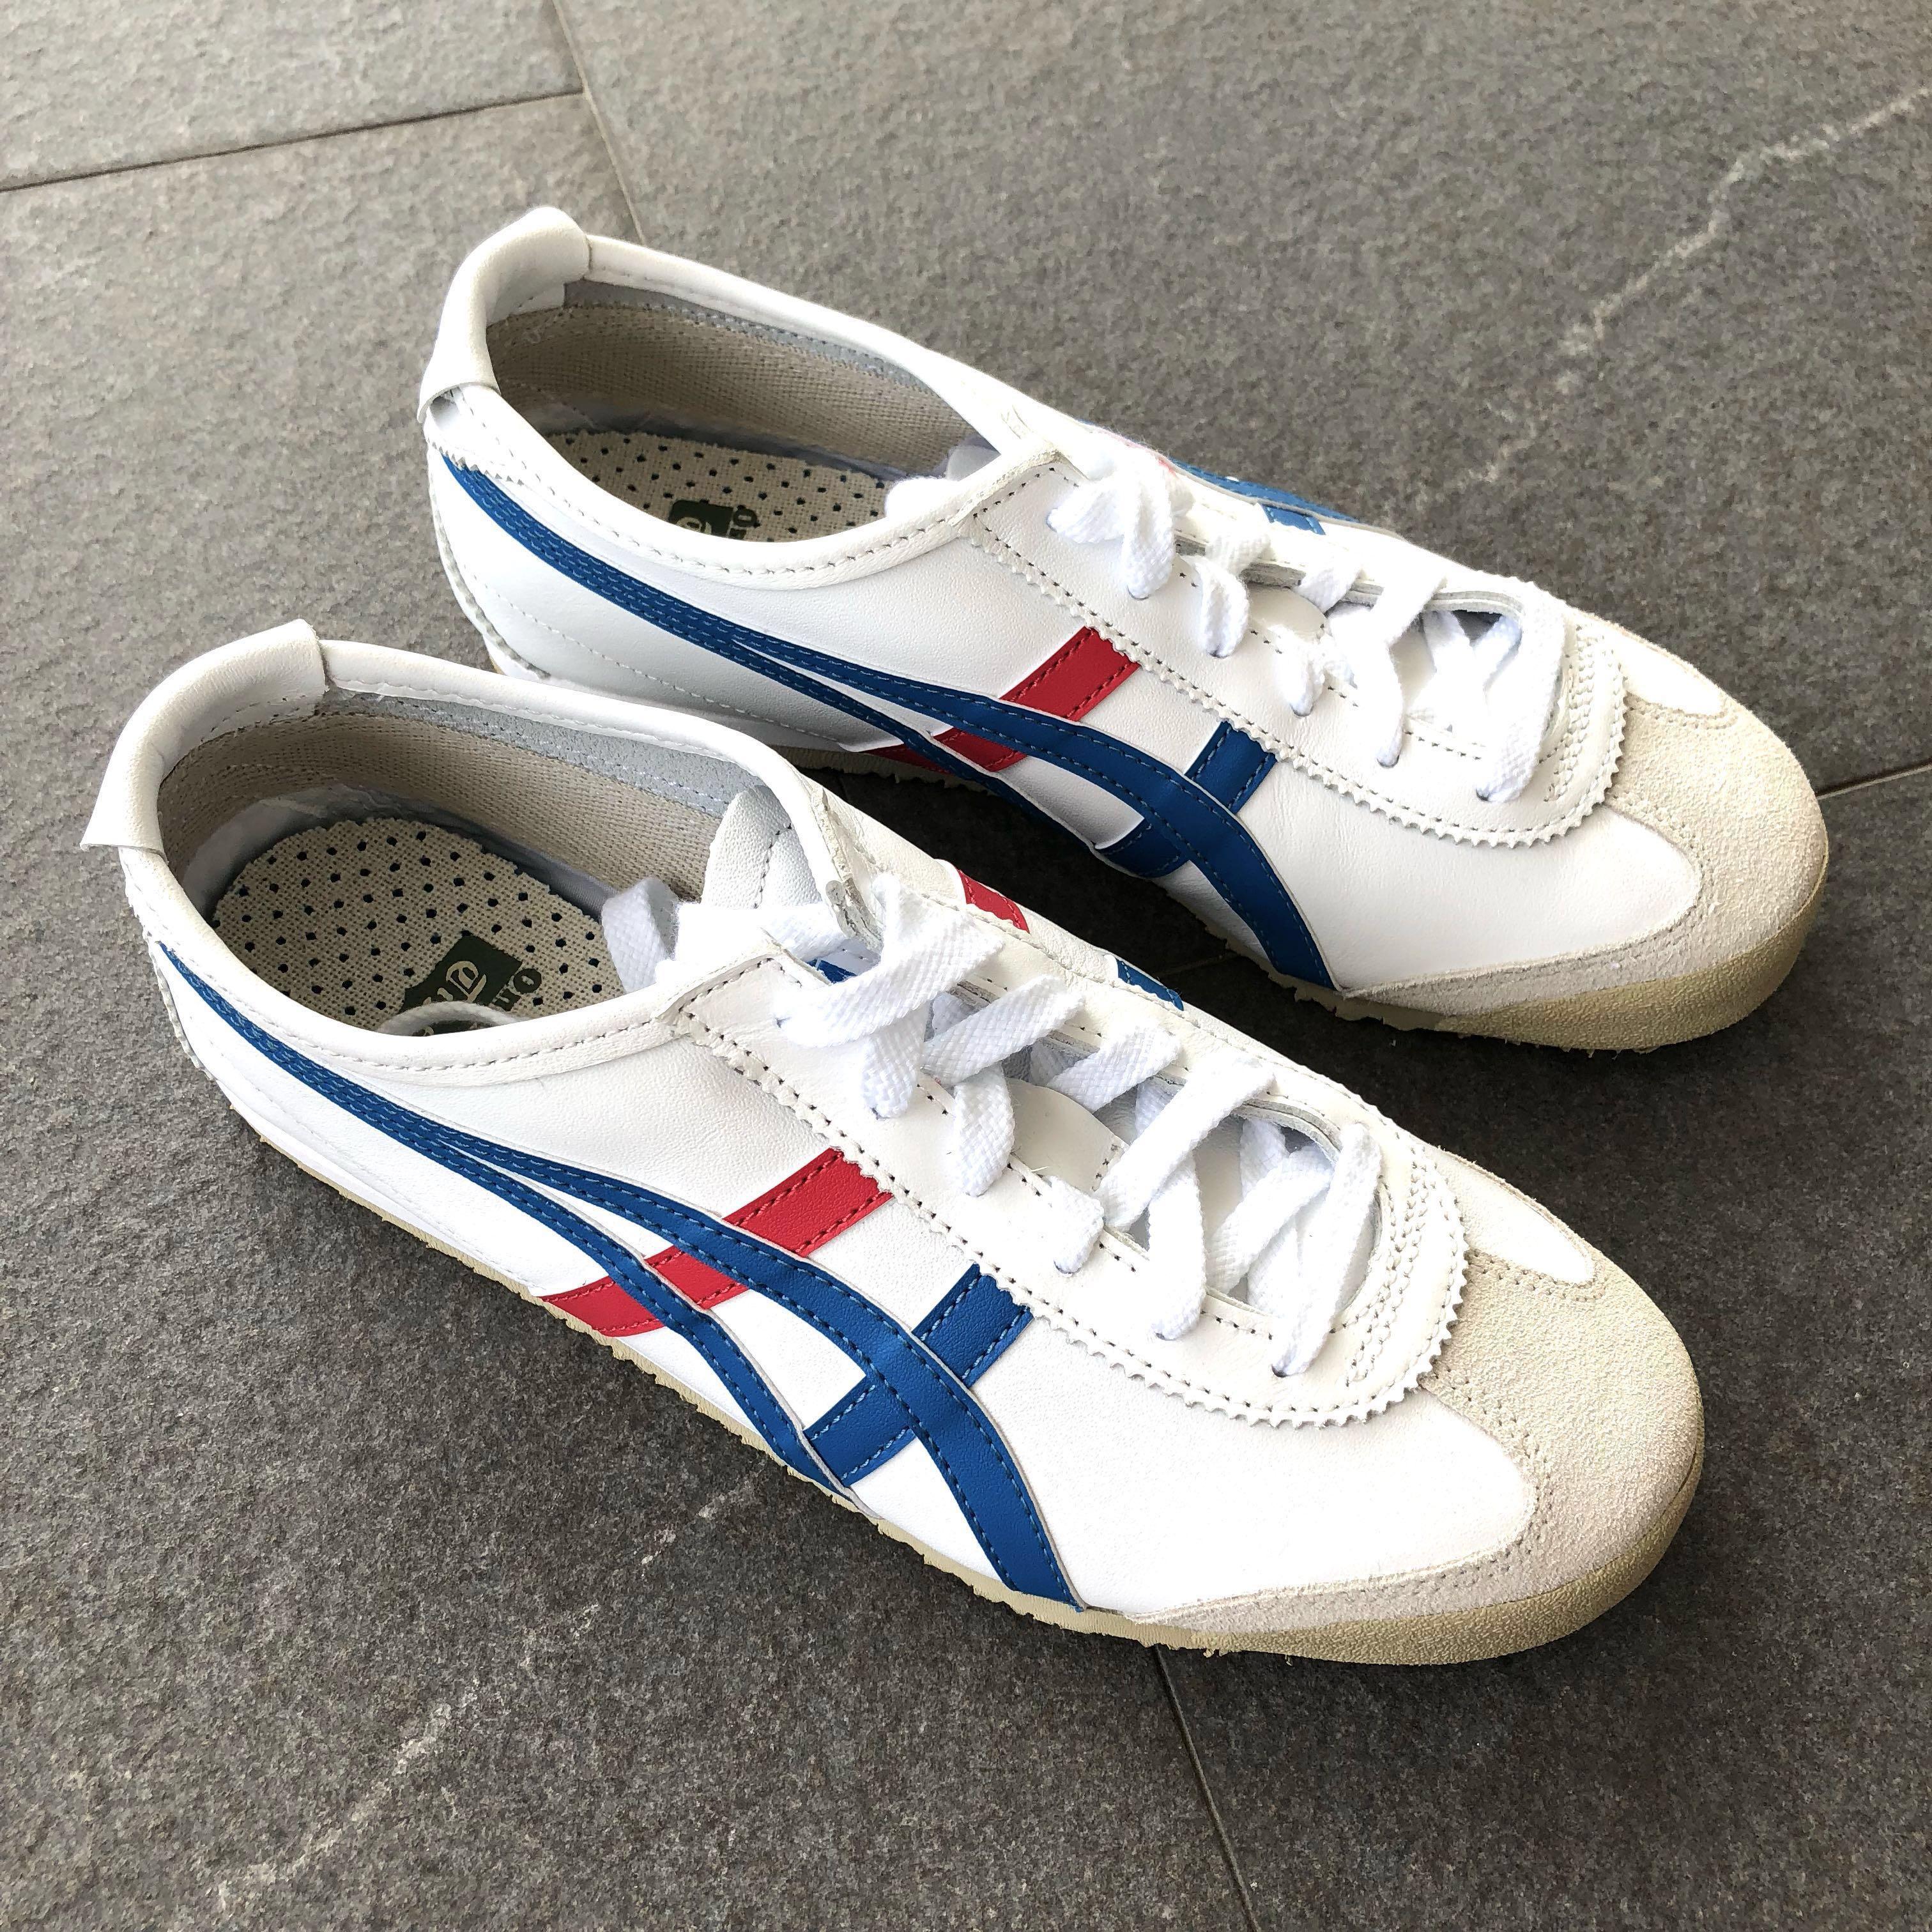 onitsuka tiger shoes no laces